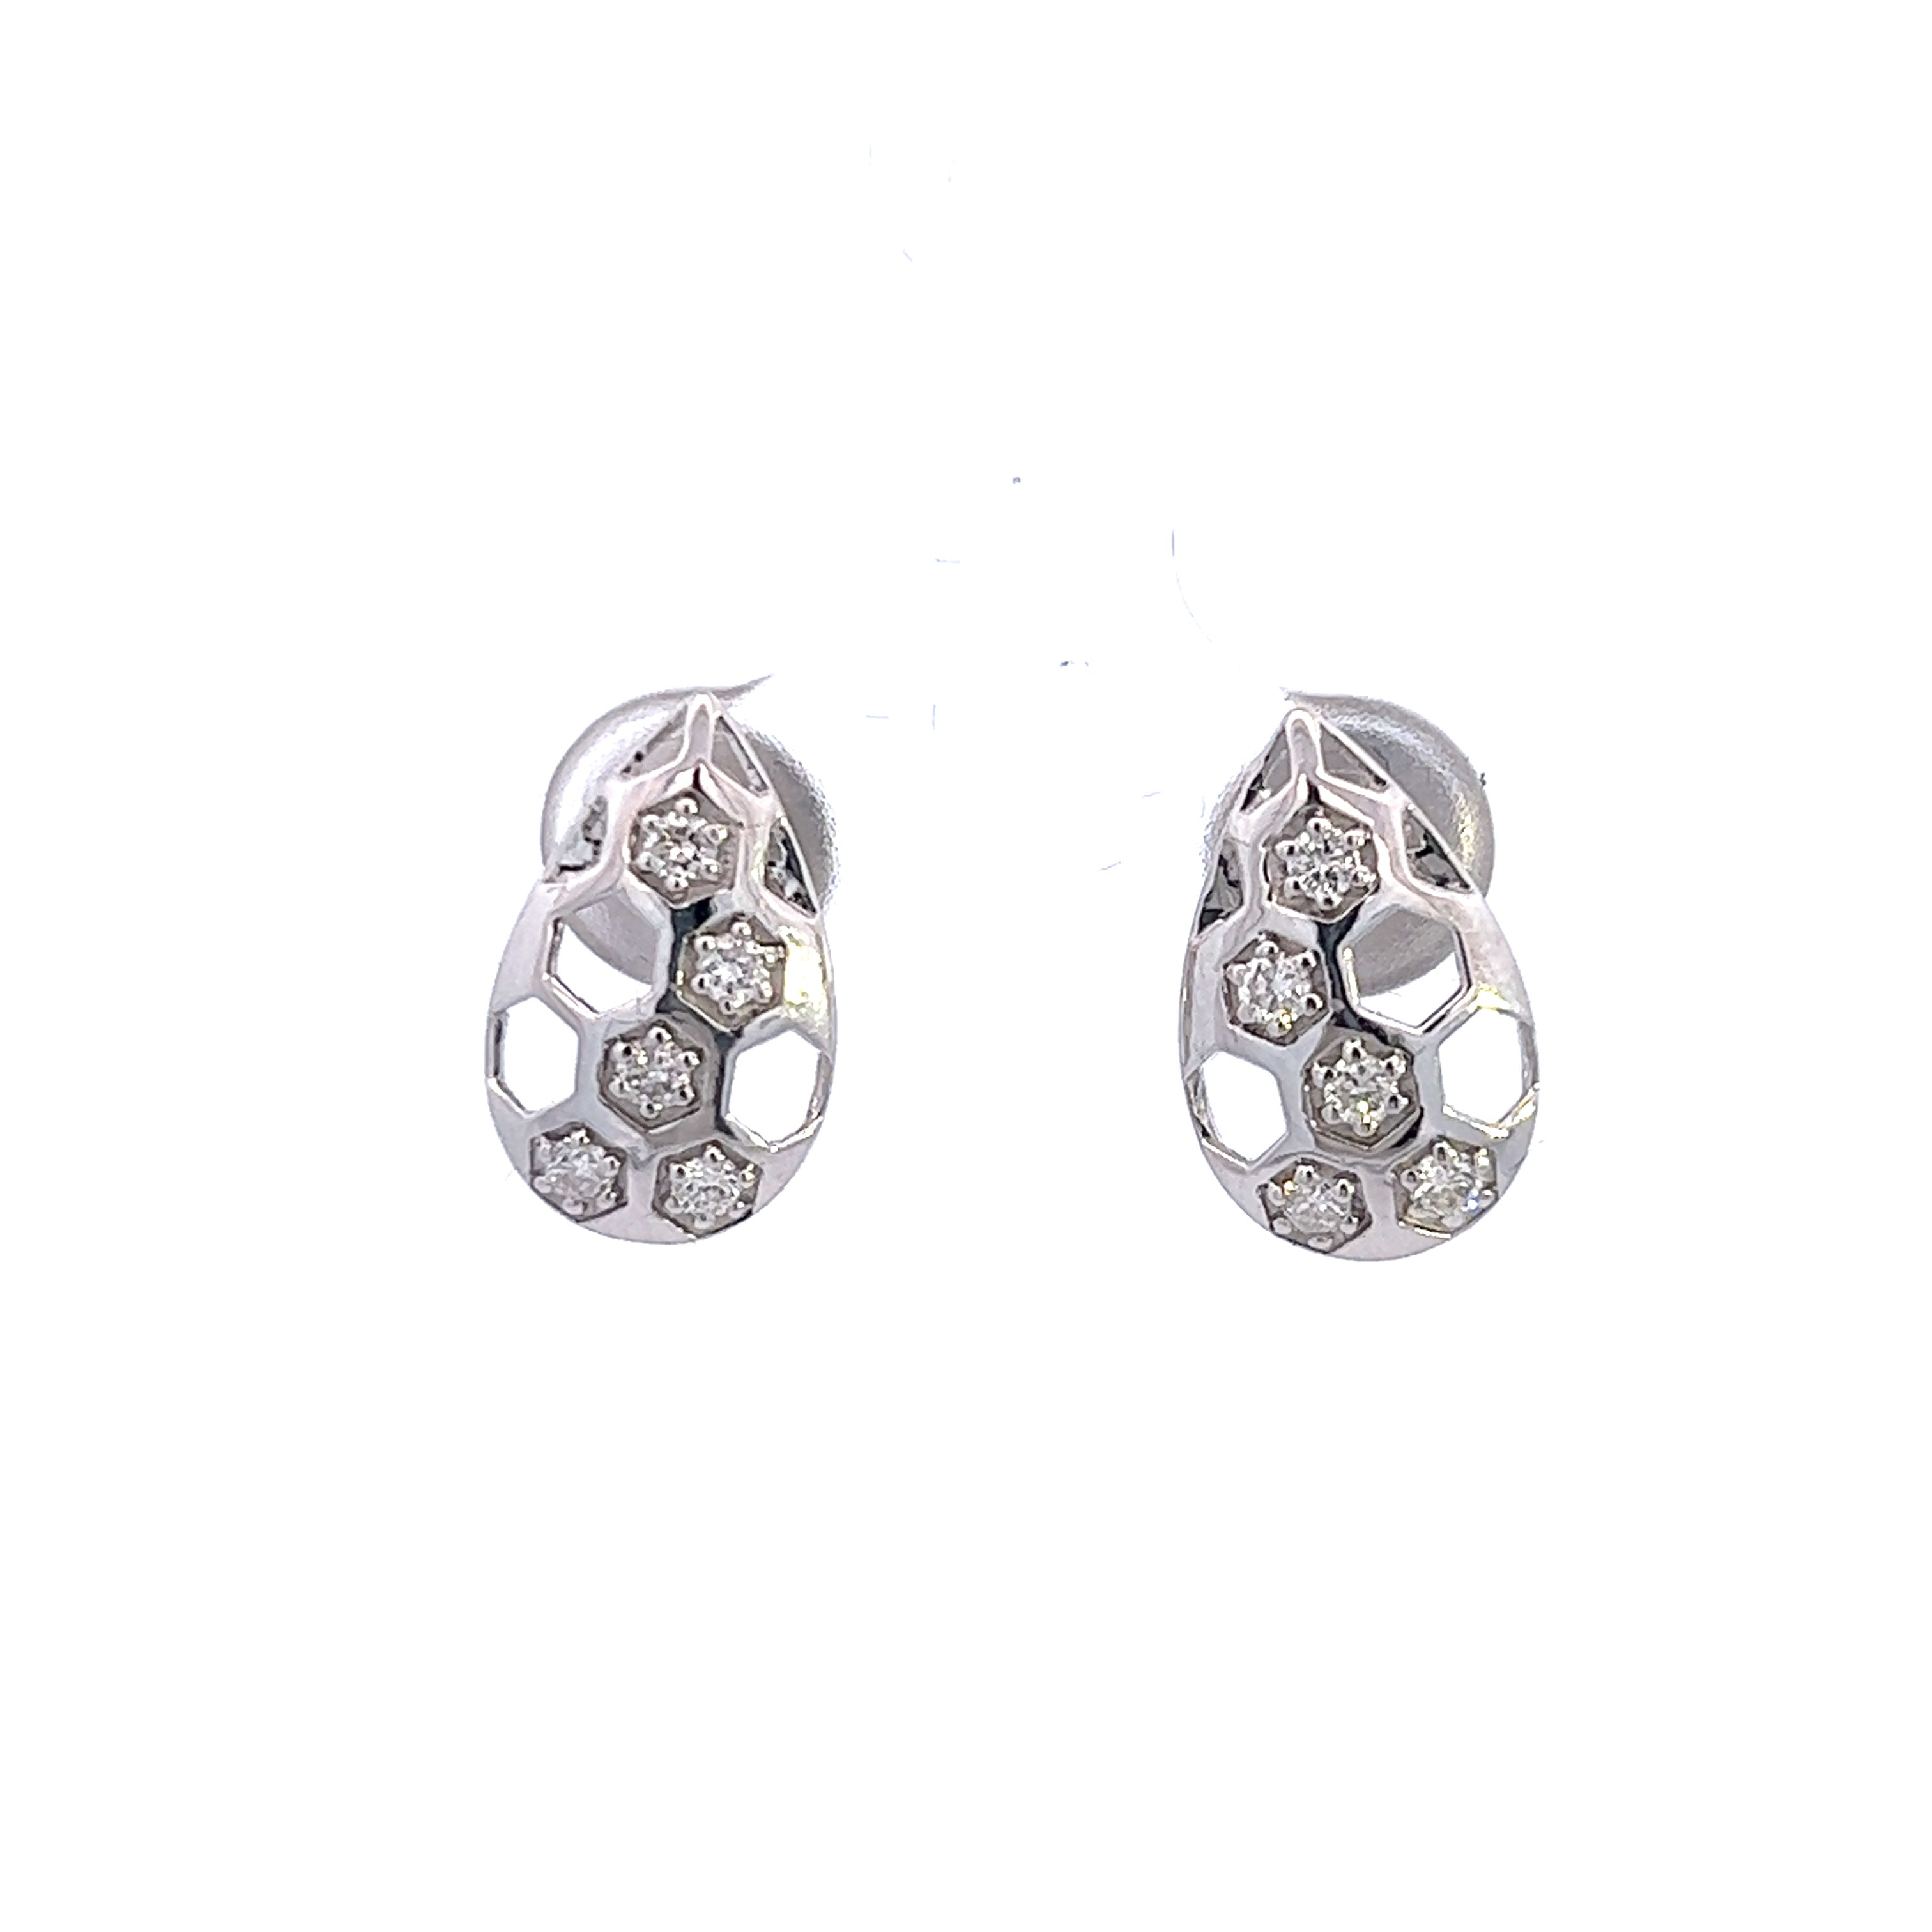 Delicate 14K White Gold Teardrop Earrings with Dazzling Diamonds